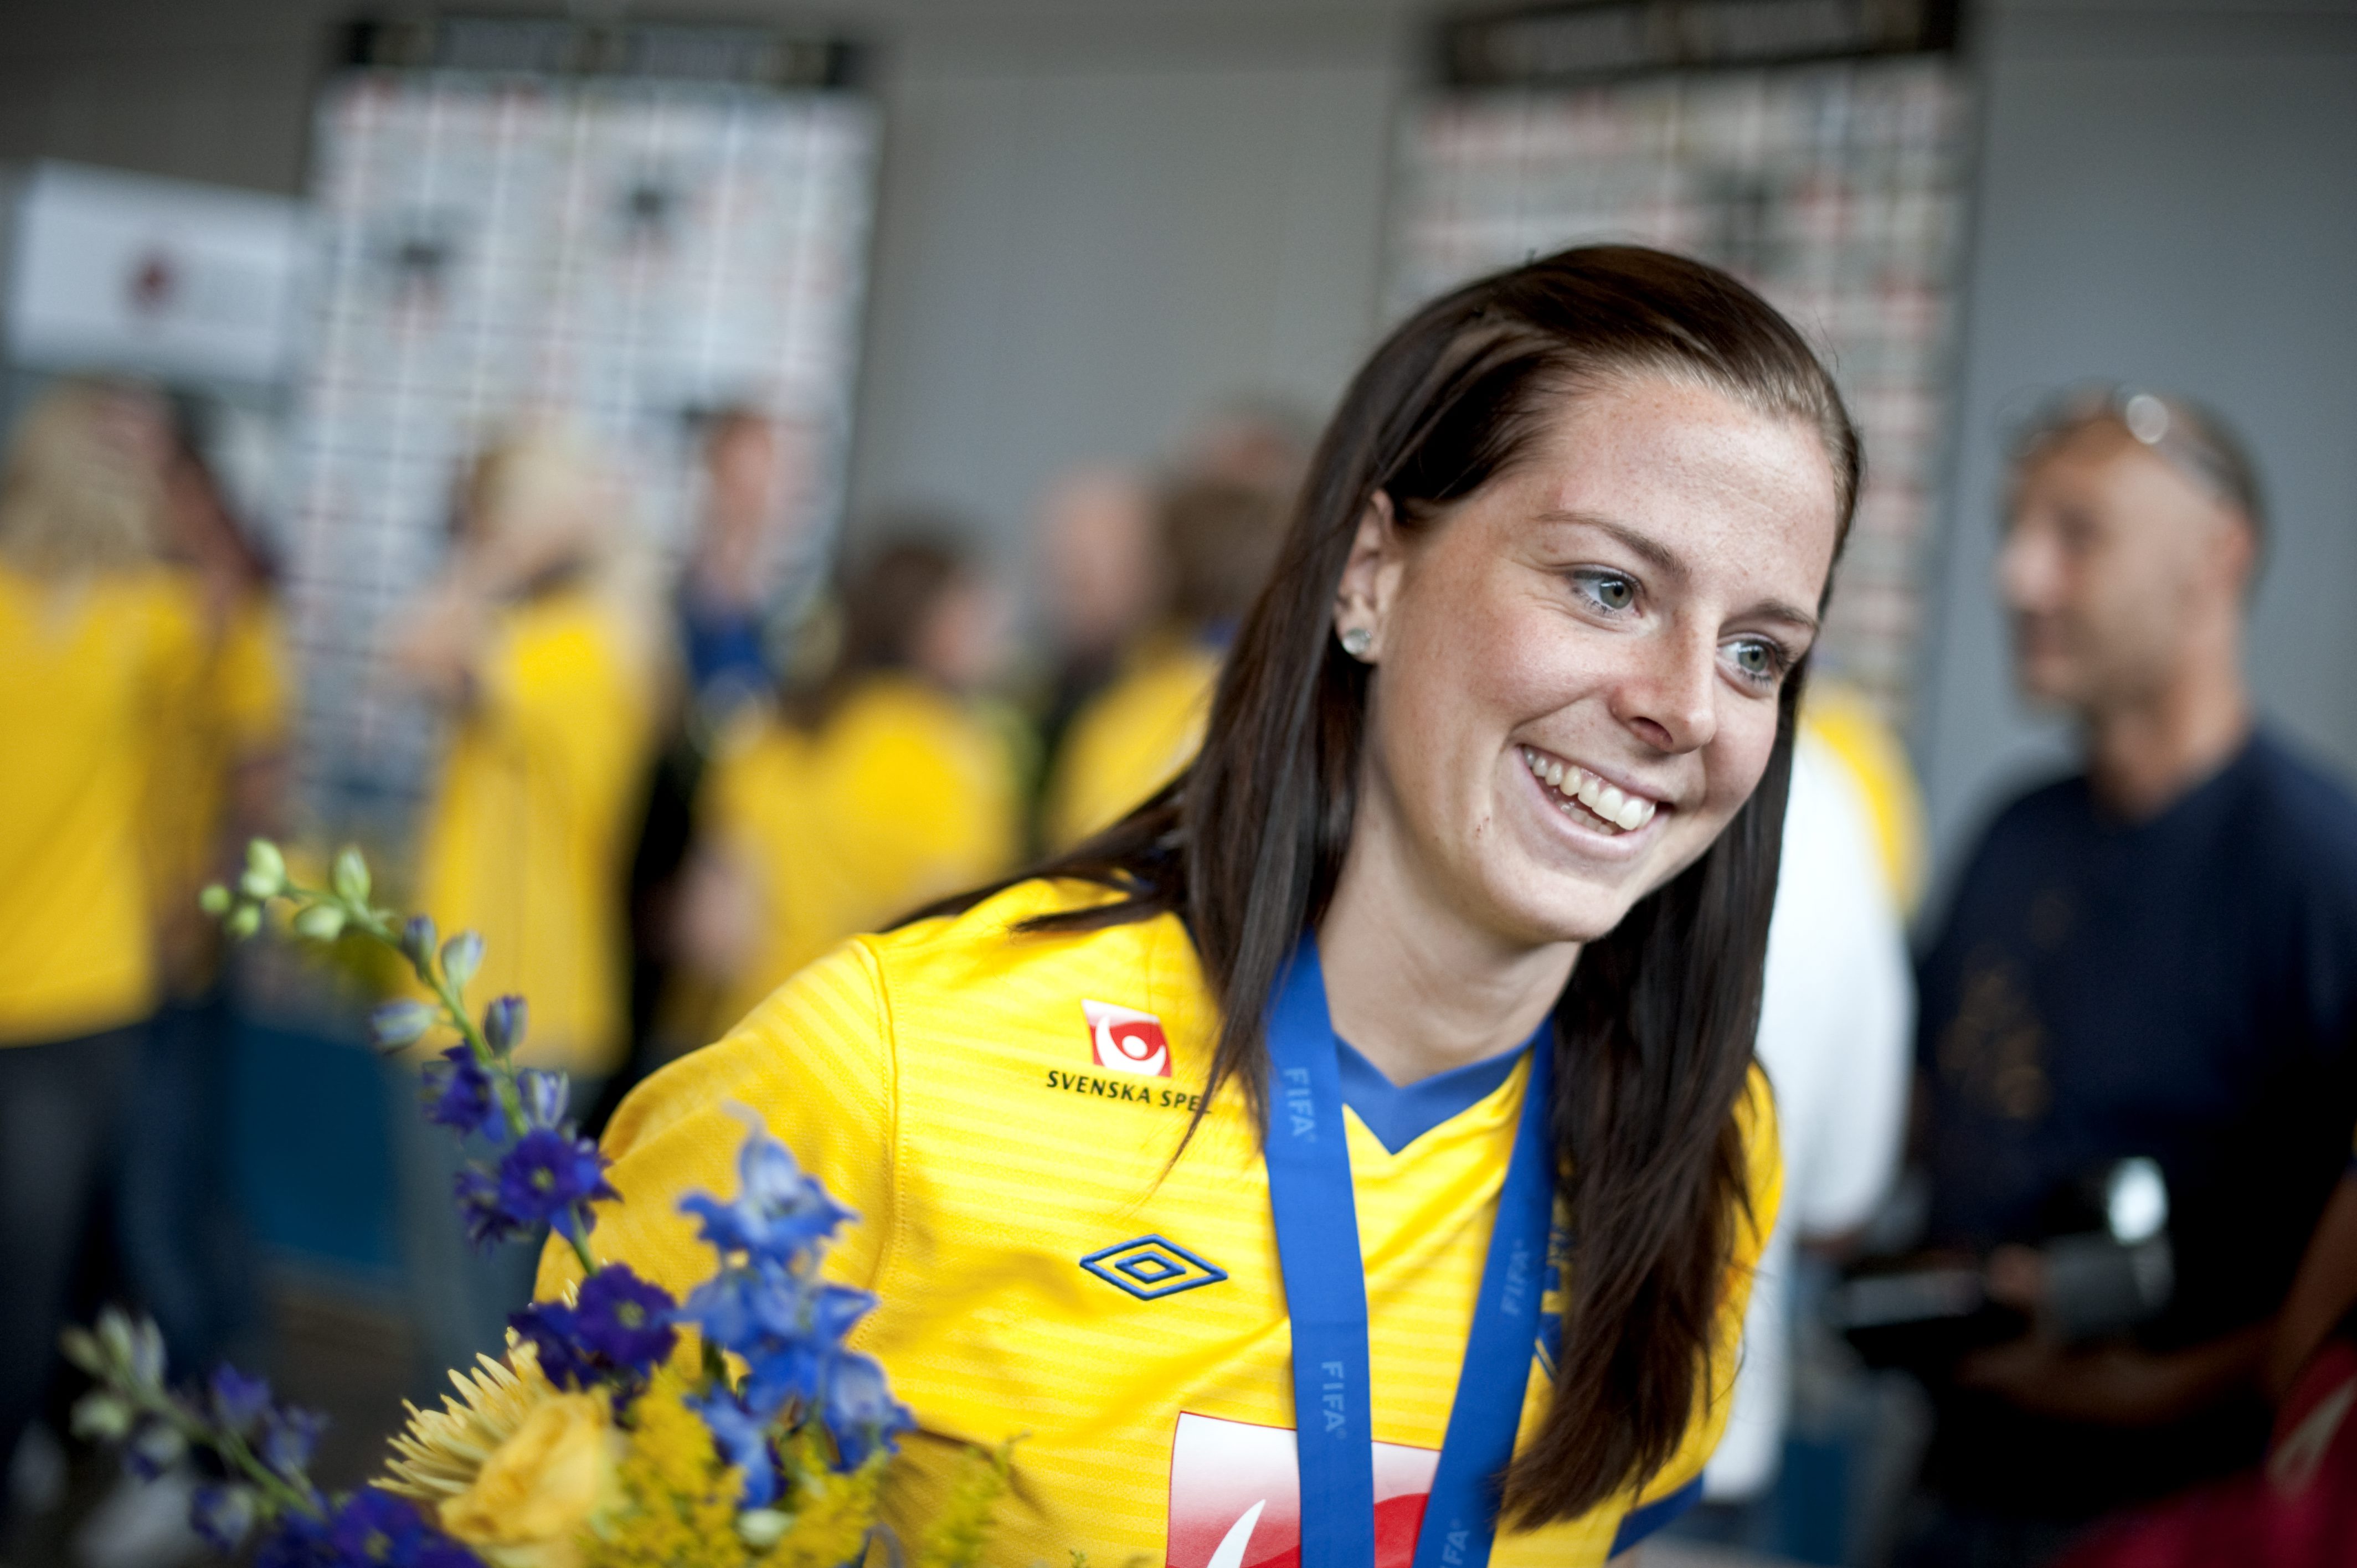 Den stora svenska stjärnan, Lotta Schelin, hade en trög start på turneringen men allt eftersom matcherna kom väte hon med uppgiften.